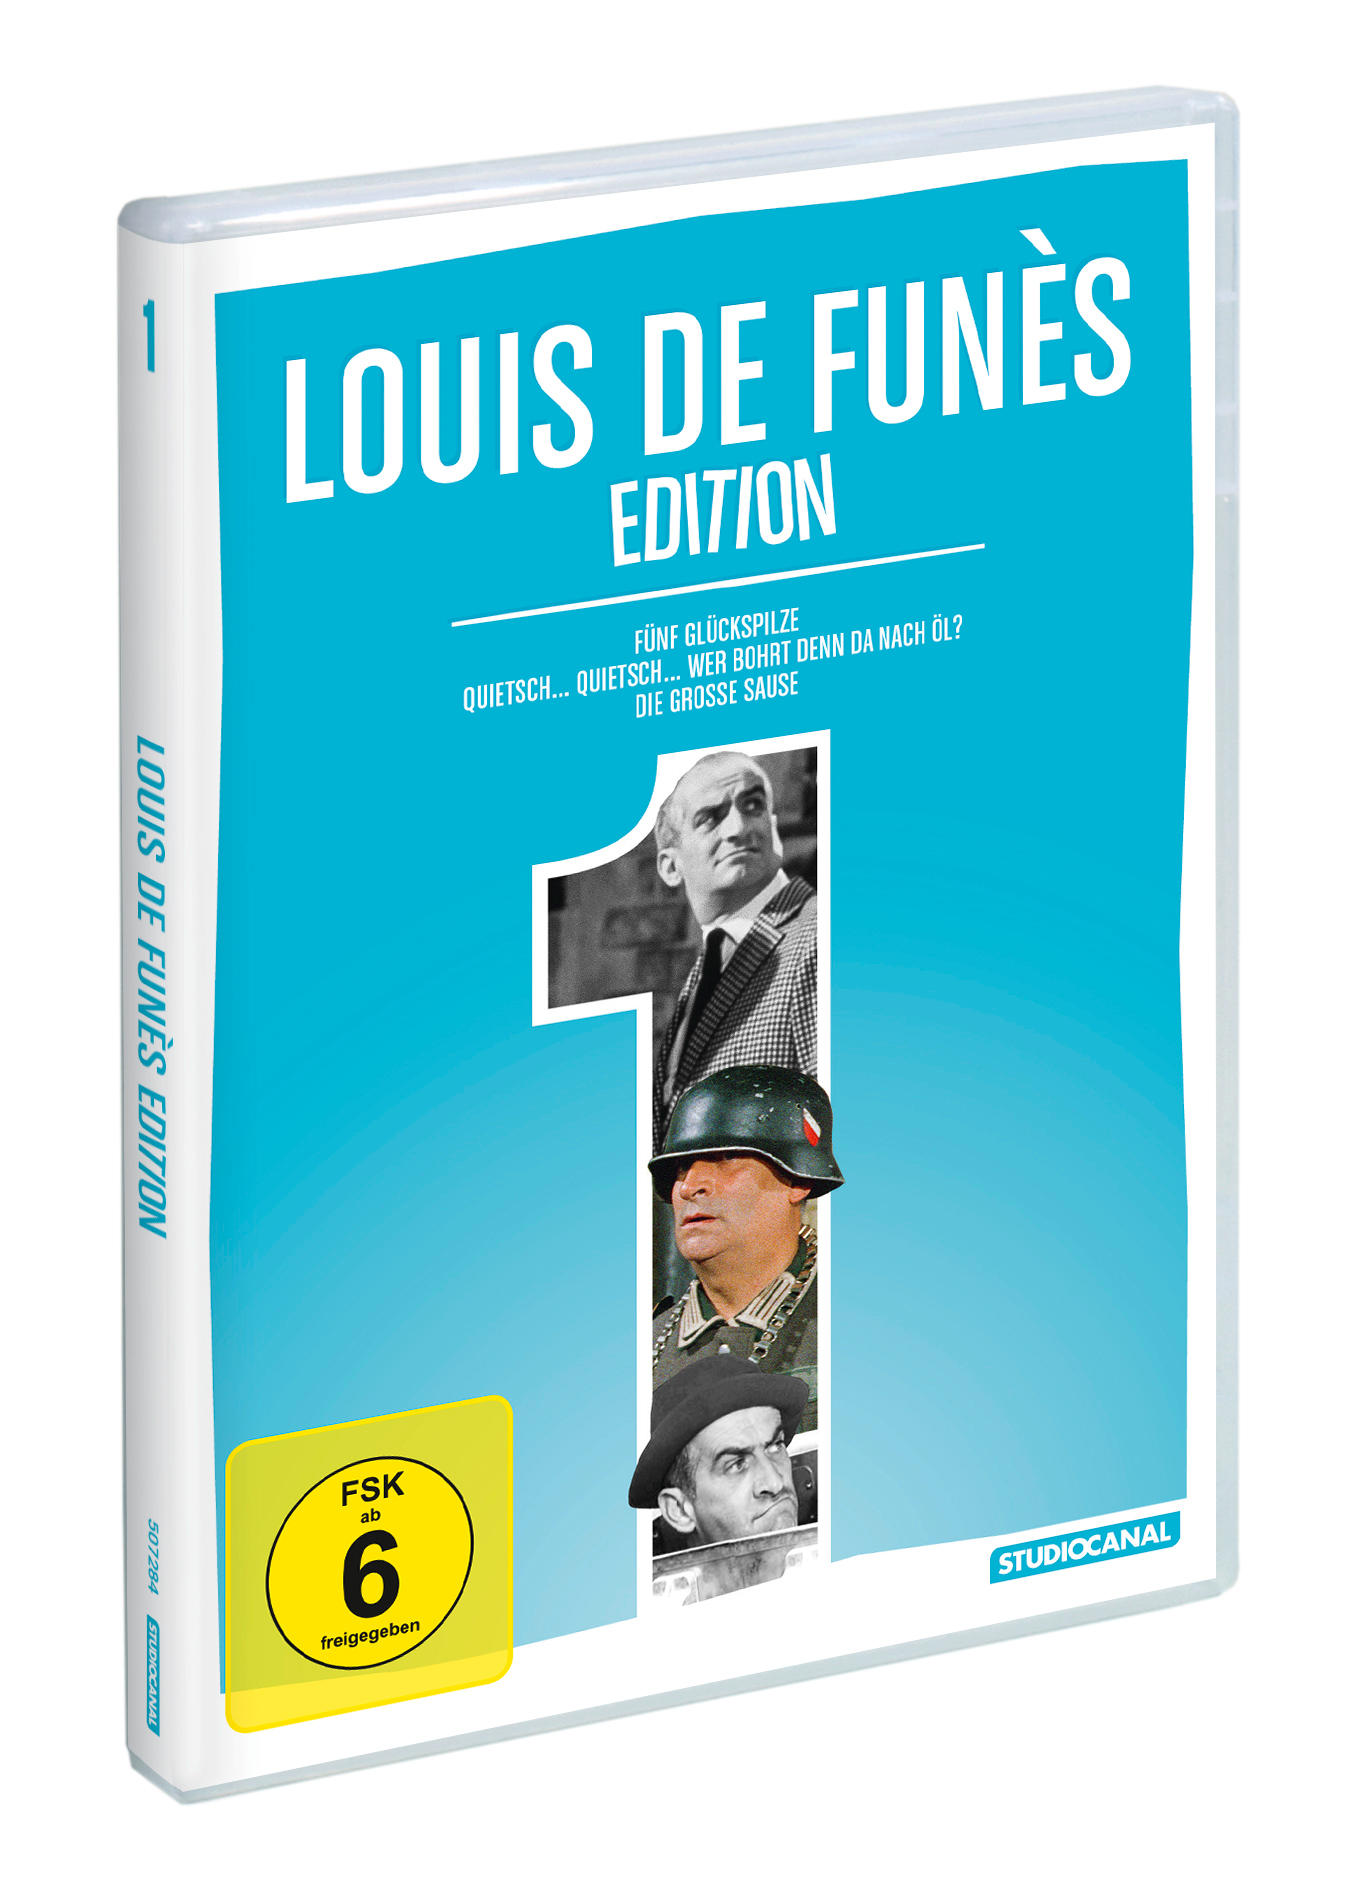 Louis de Funès DVD 1 Edition